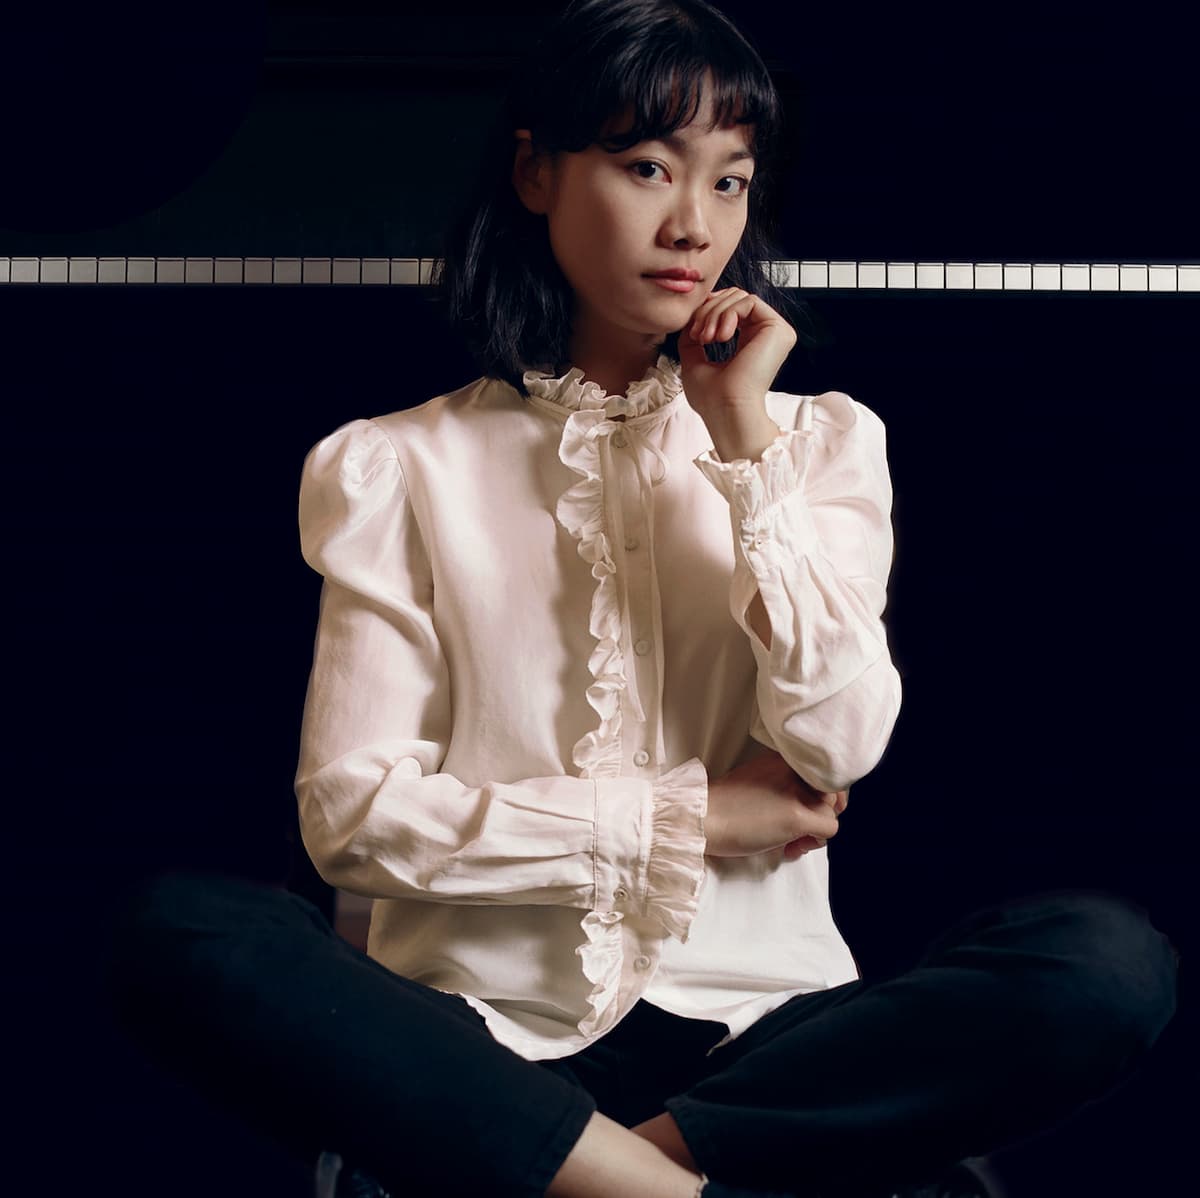 Hong Kong born pianist Tiffany Poon